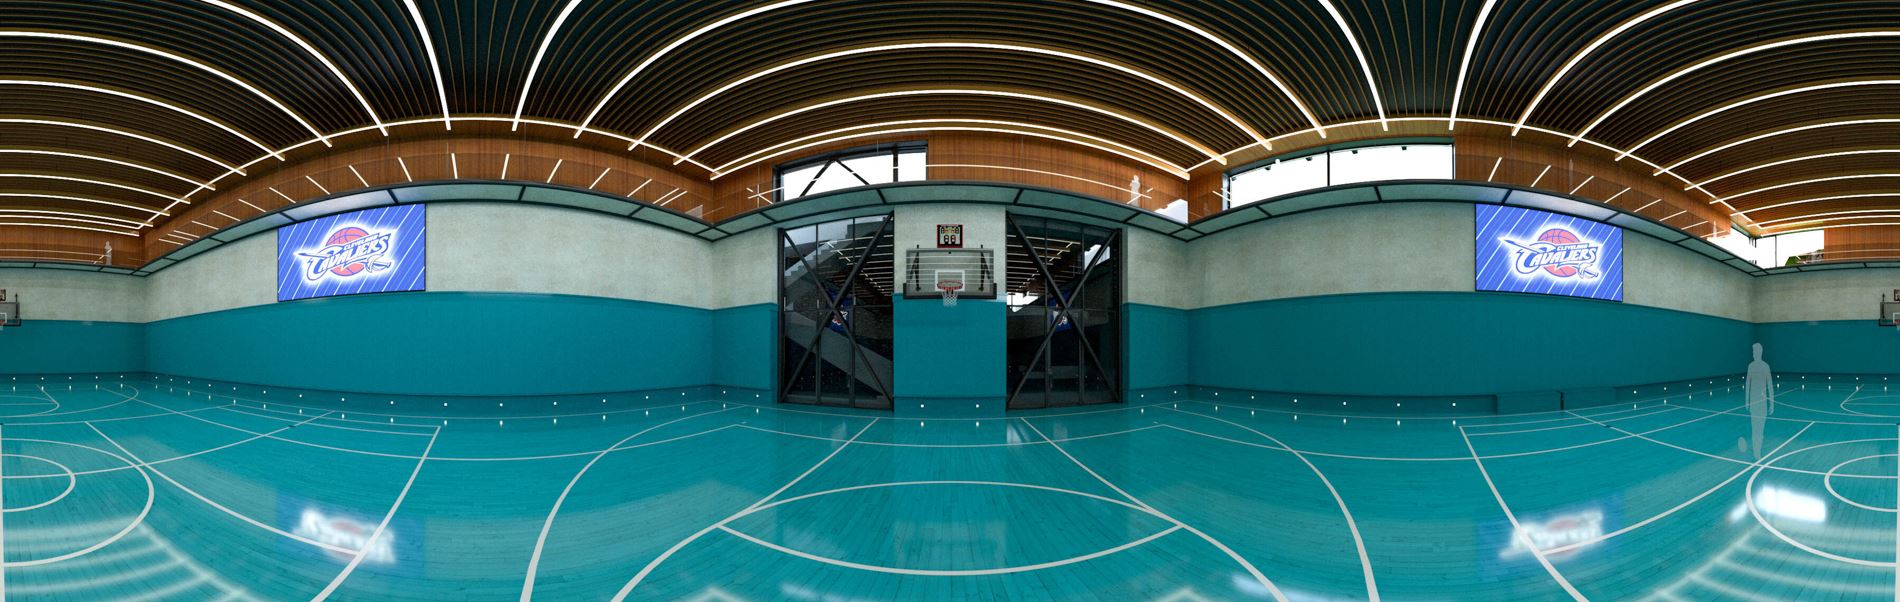 360 spherical panorama rendering